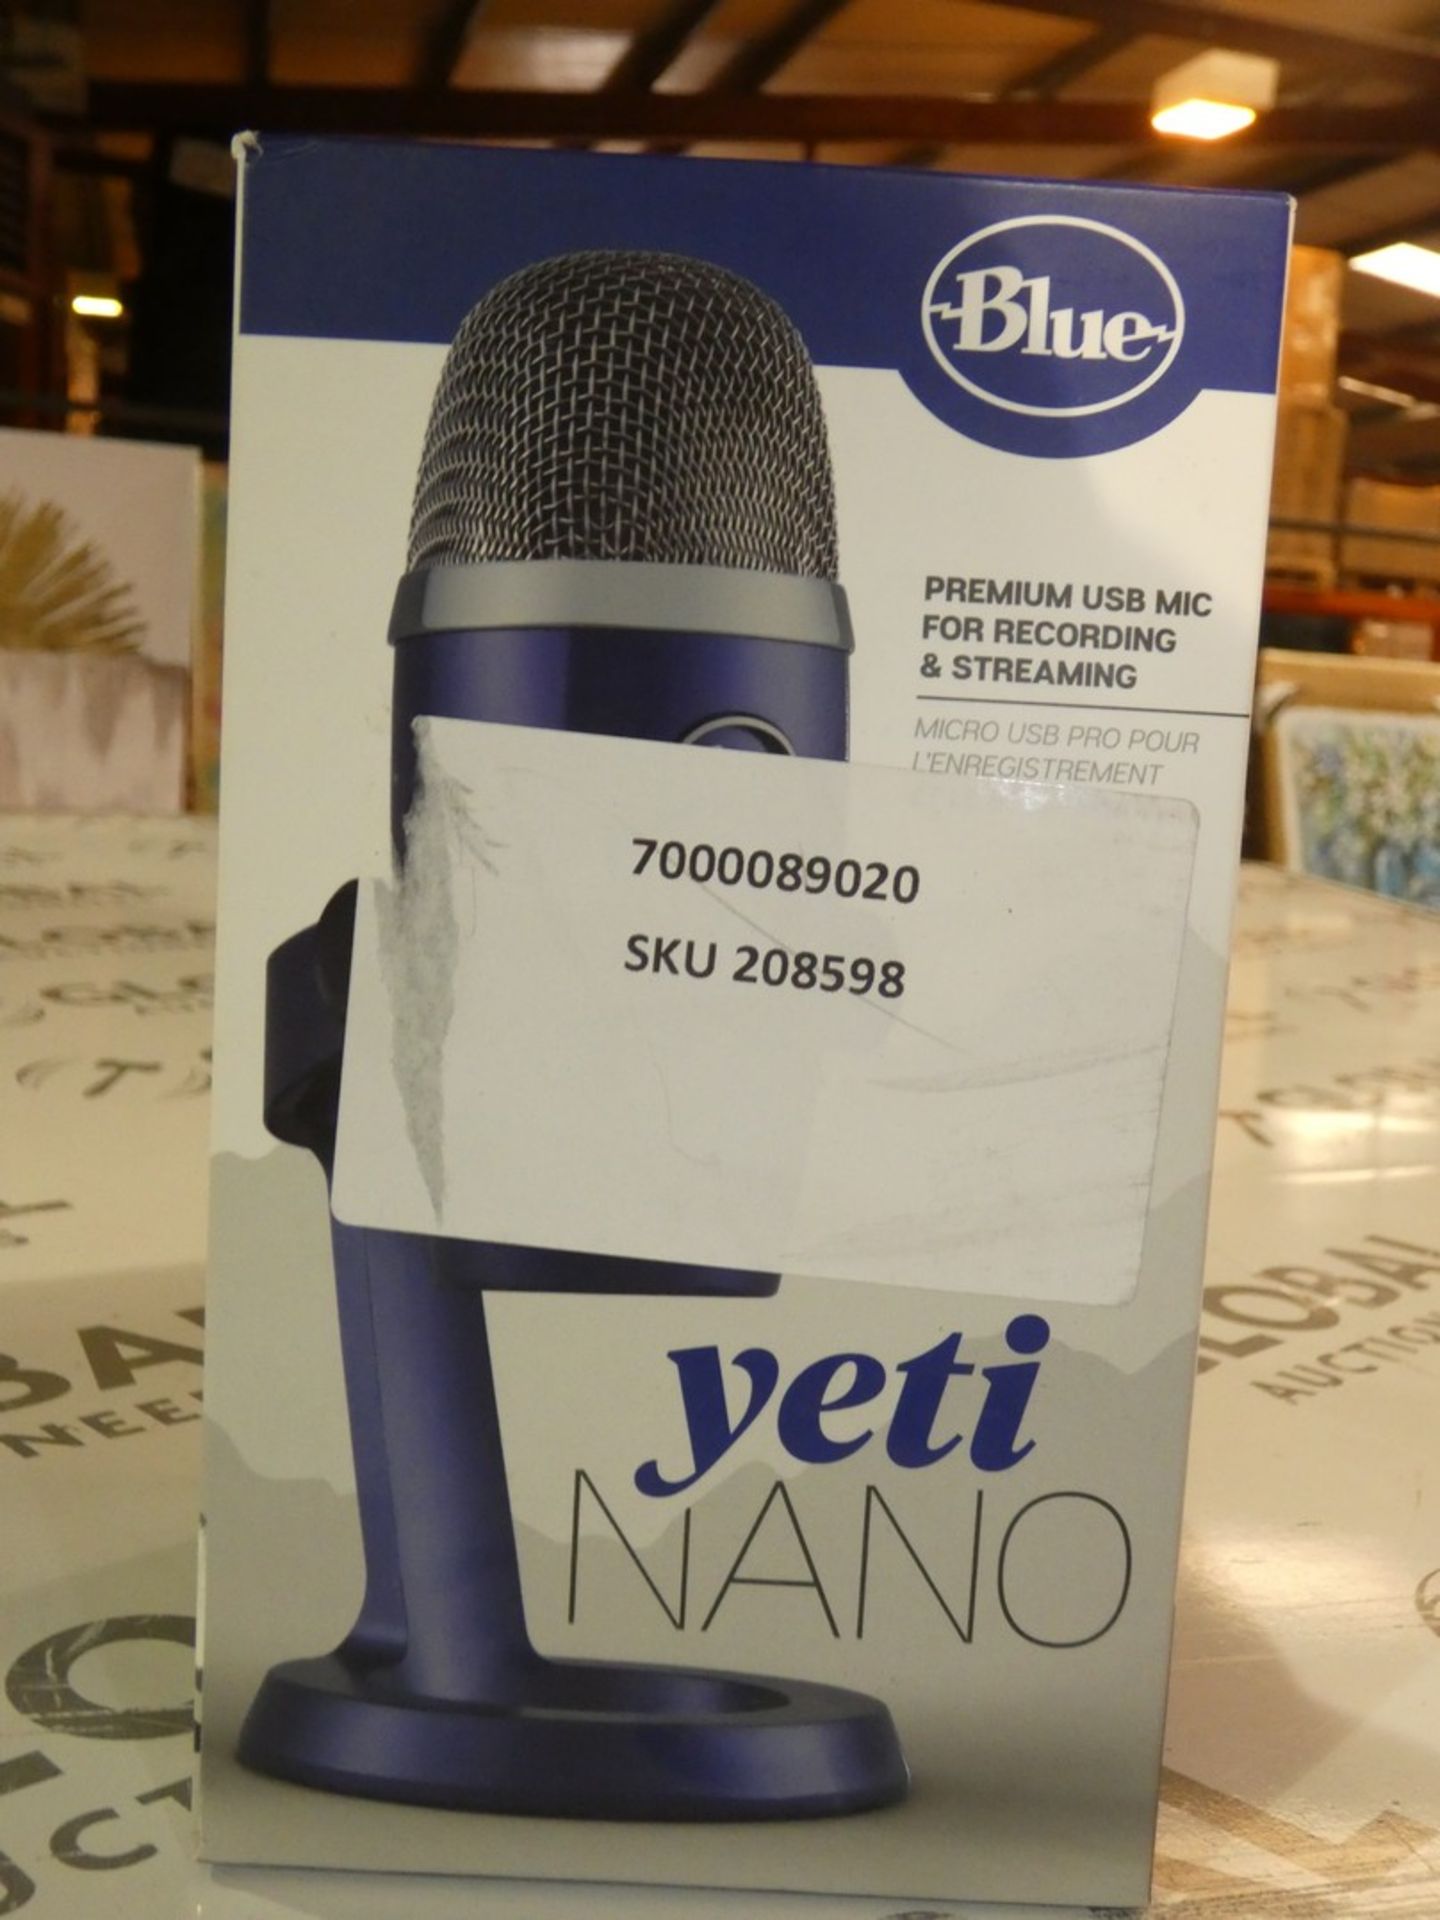 Boxed Yetti Nano Premium USB Mic For Recording and